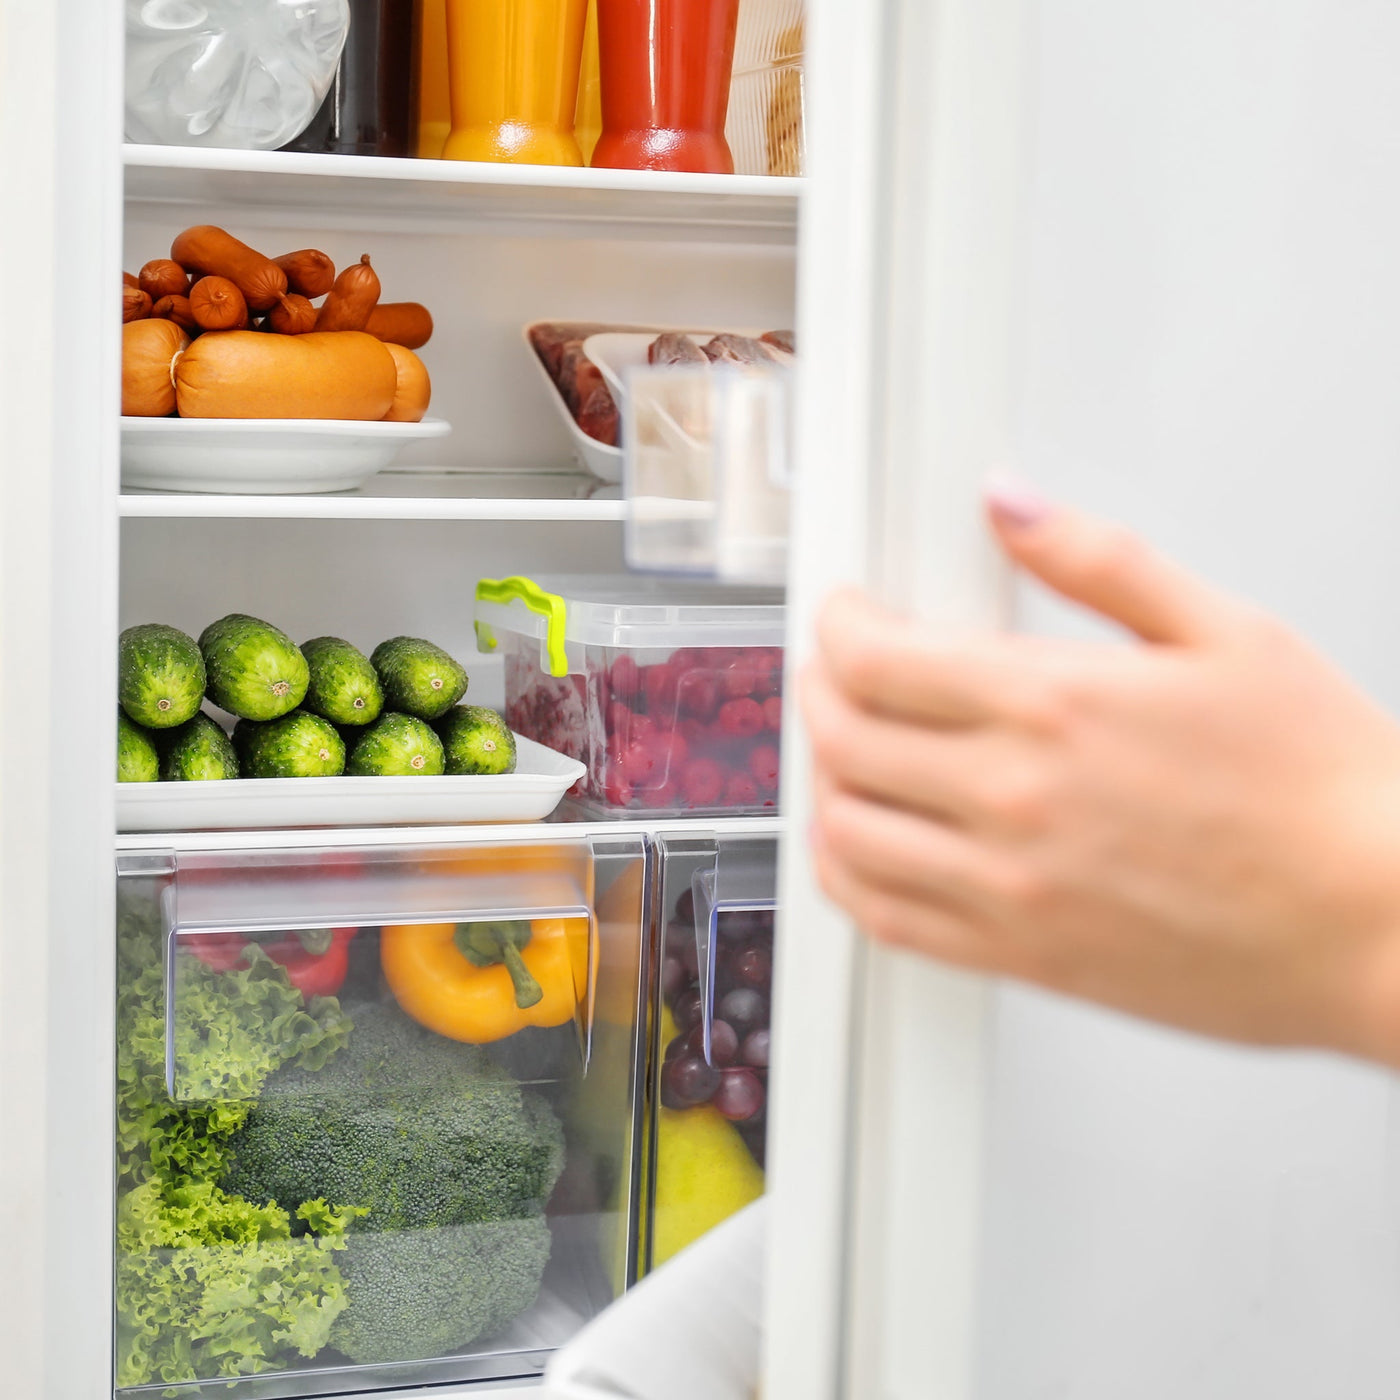 åpne kjøleskapet grønt